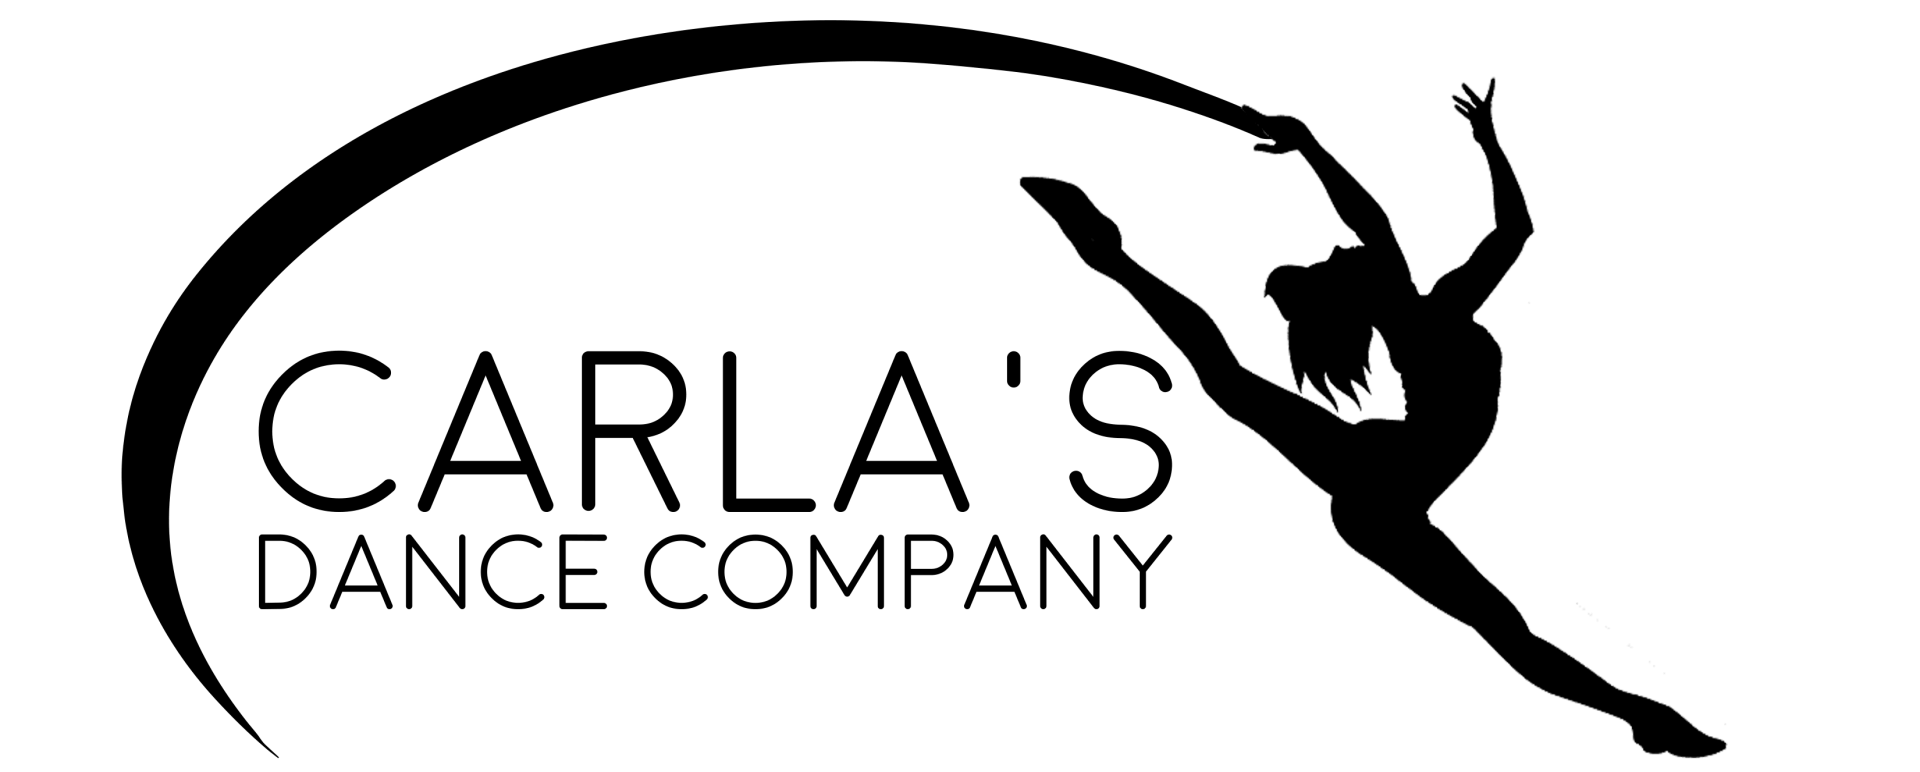 Carla's Dance Company. logo